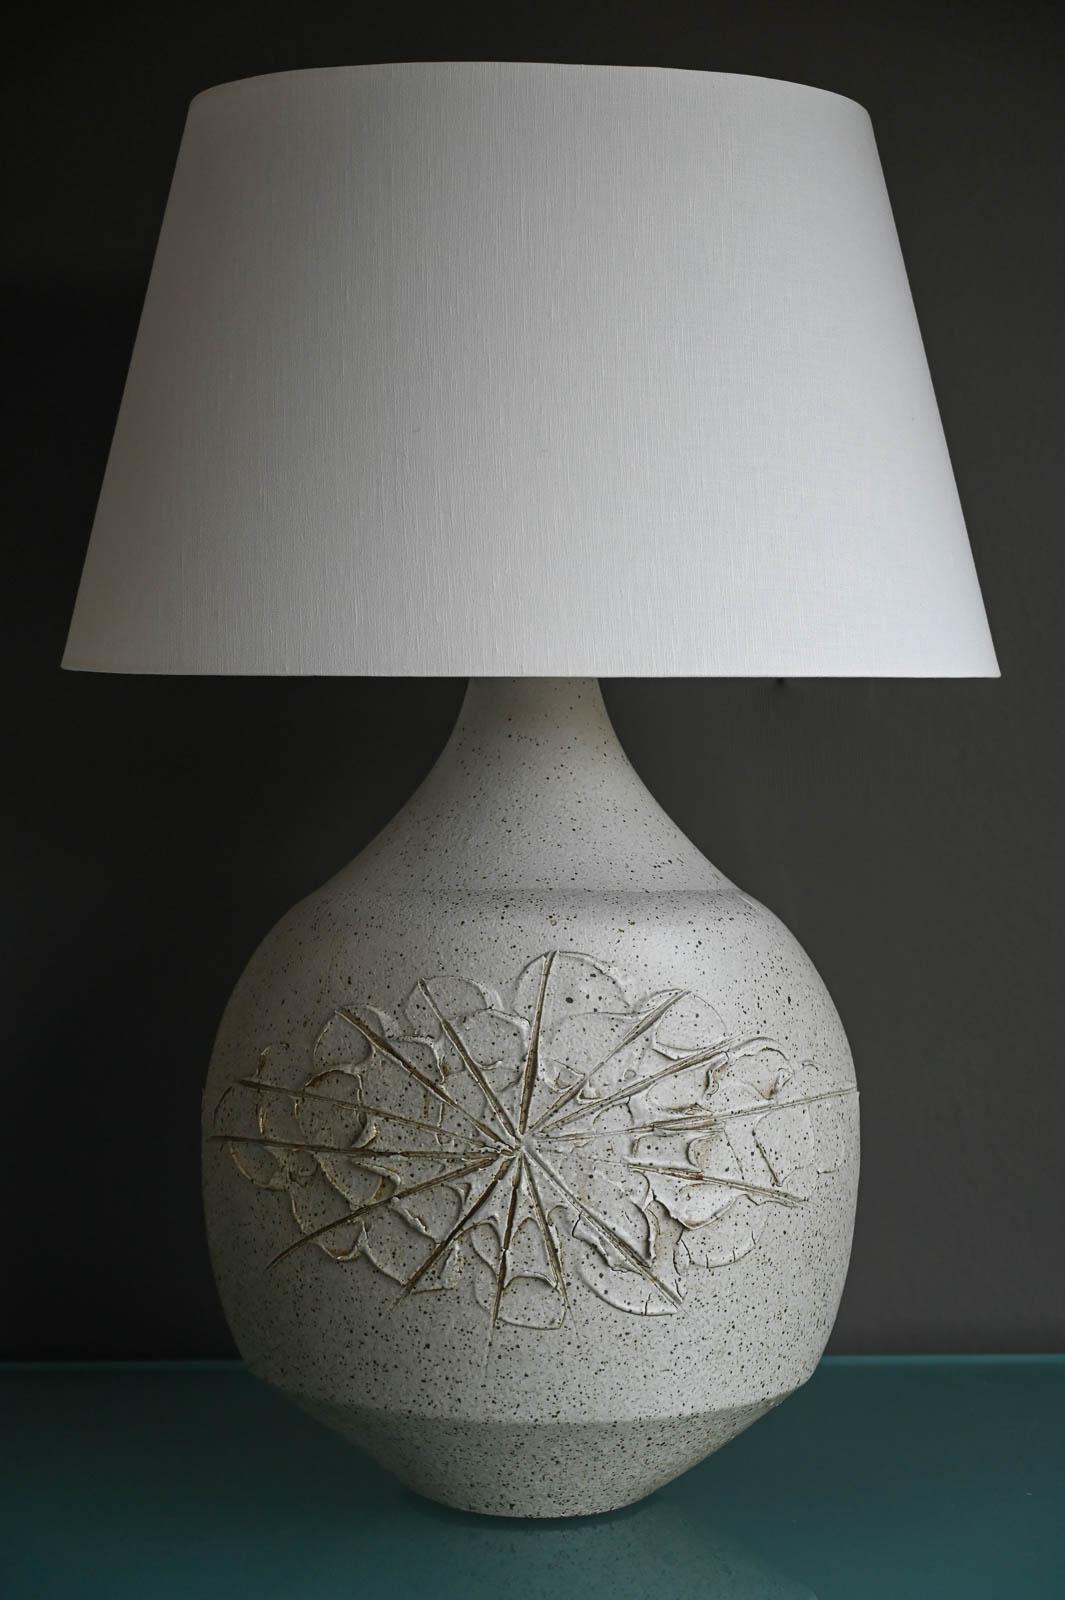 David Cressey 'Solar' Keramiklampe, ca. 1970.  Schönes grau gesprenkeltes, glasiertes Solar-Muster, eines seiner begehrtesten Designs in dieser Lampe.  Ausgezeichneter Vintage-Zustand mit neuer Lampenverkabelung und -befestigung.  Inklusive